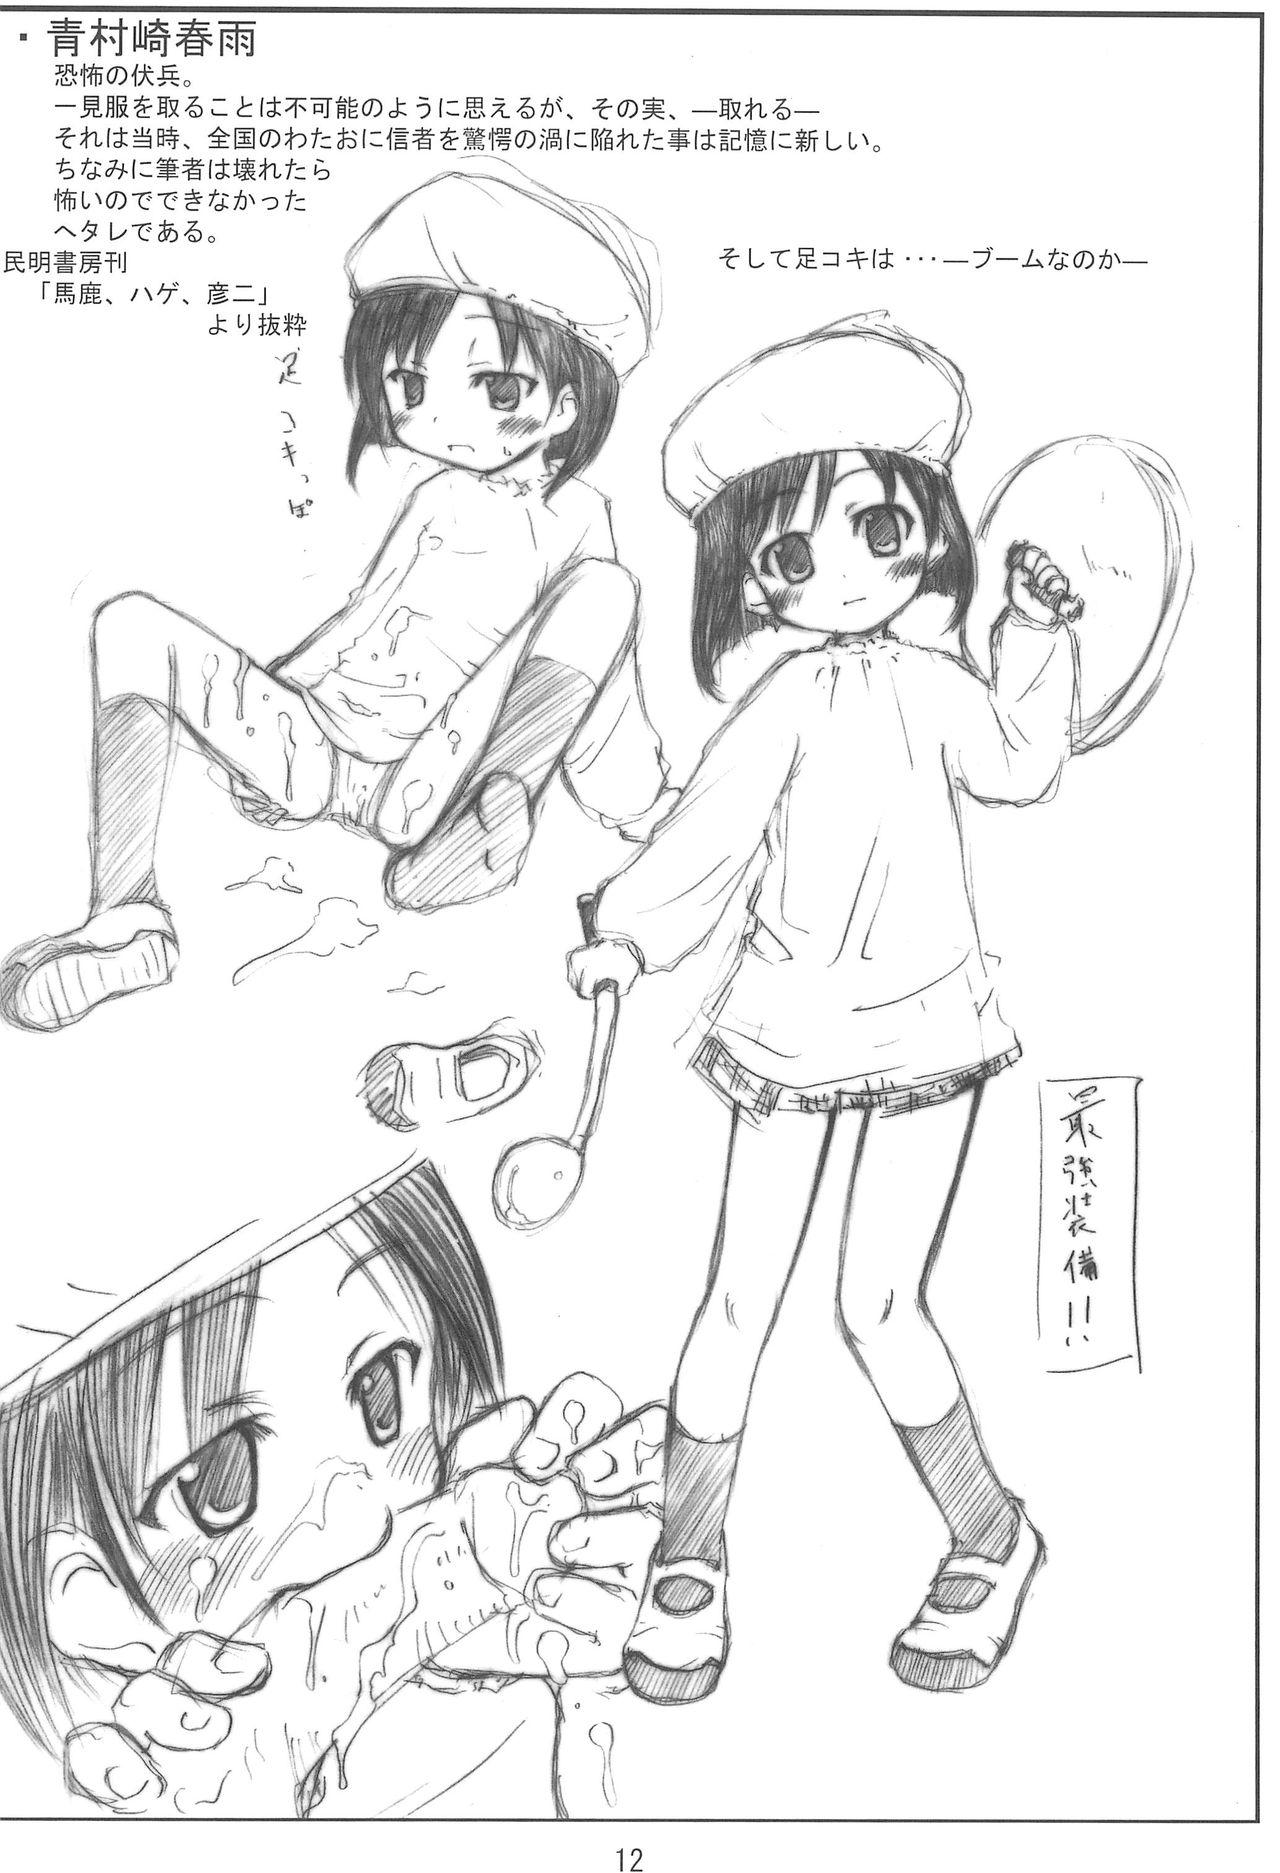 Ano Watavine - Shuukan watashi no onii-chan Licca vignette Oral Porn - Page 12